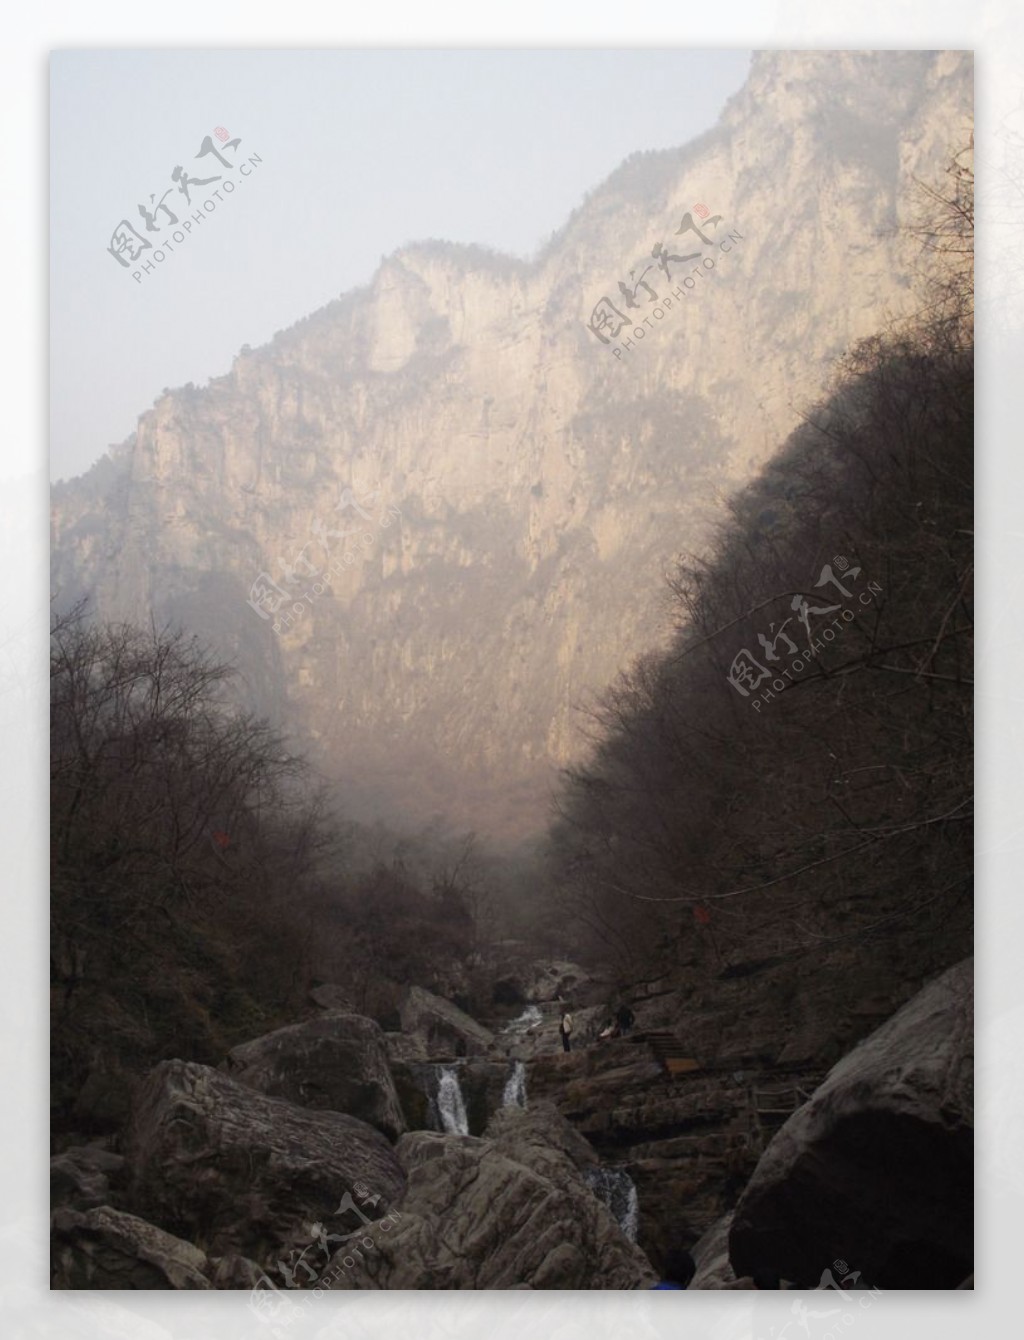 云台山冬景图片